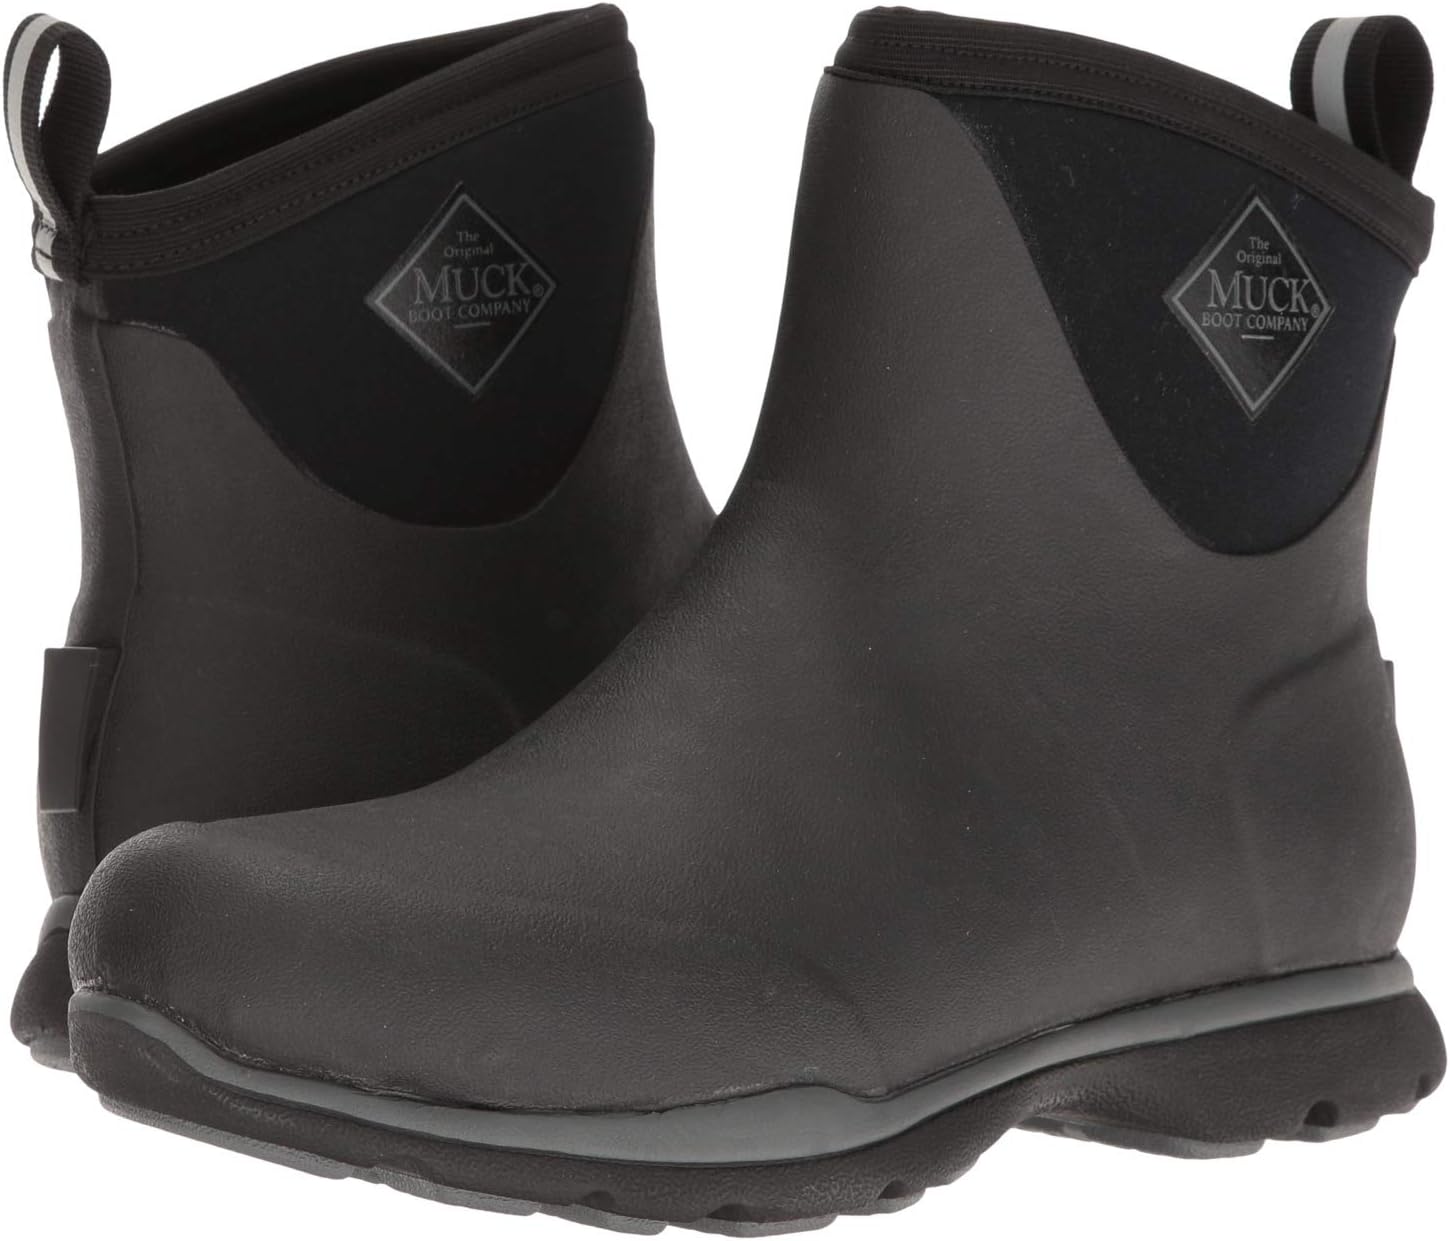 Зимние ботинки Arctic Excursion Ankle The Original Muck Boot Company, черный